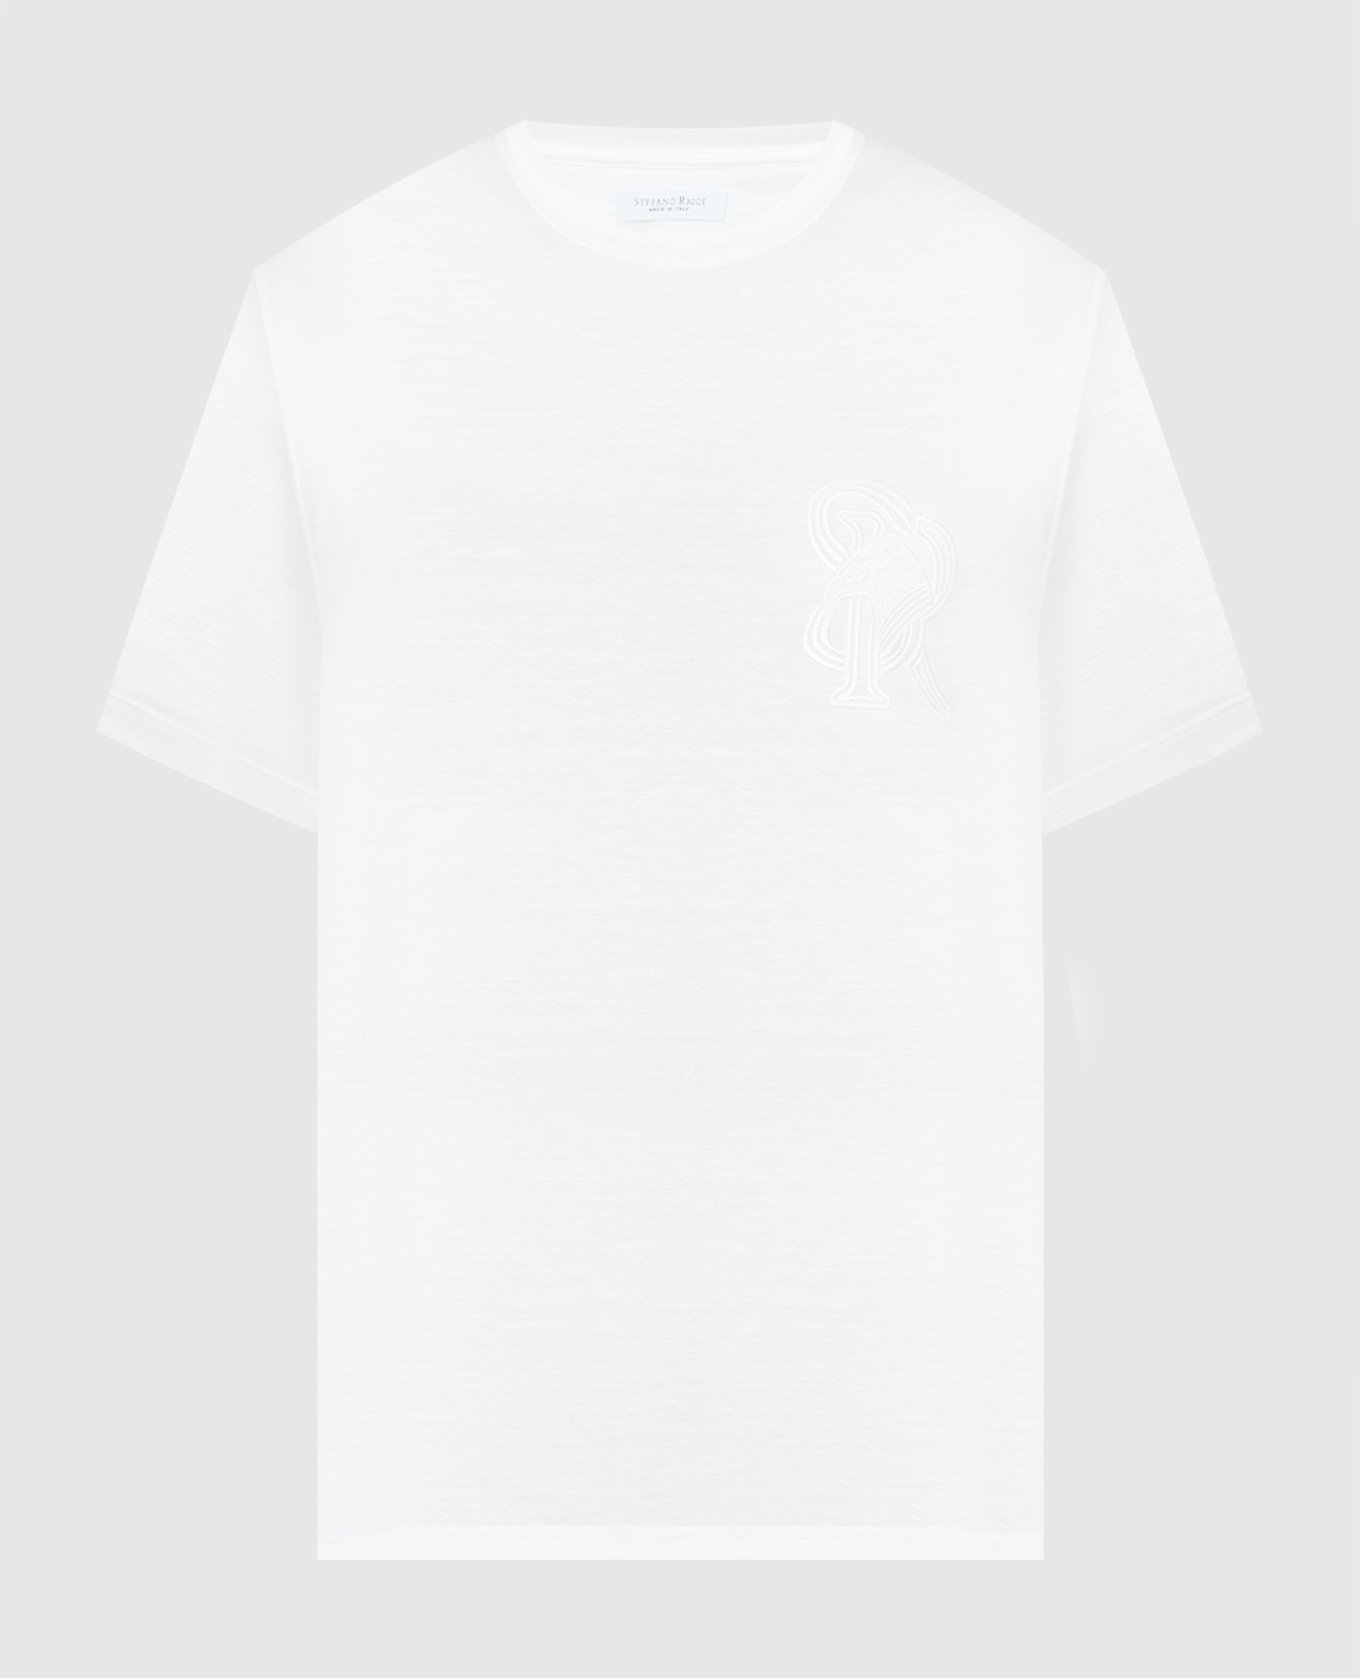 Белая футболка с вышивкой логотипа монограммы.